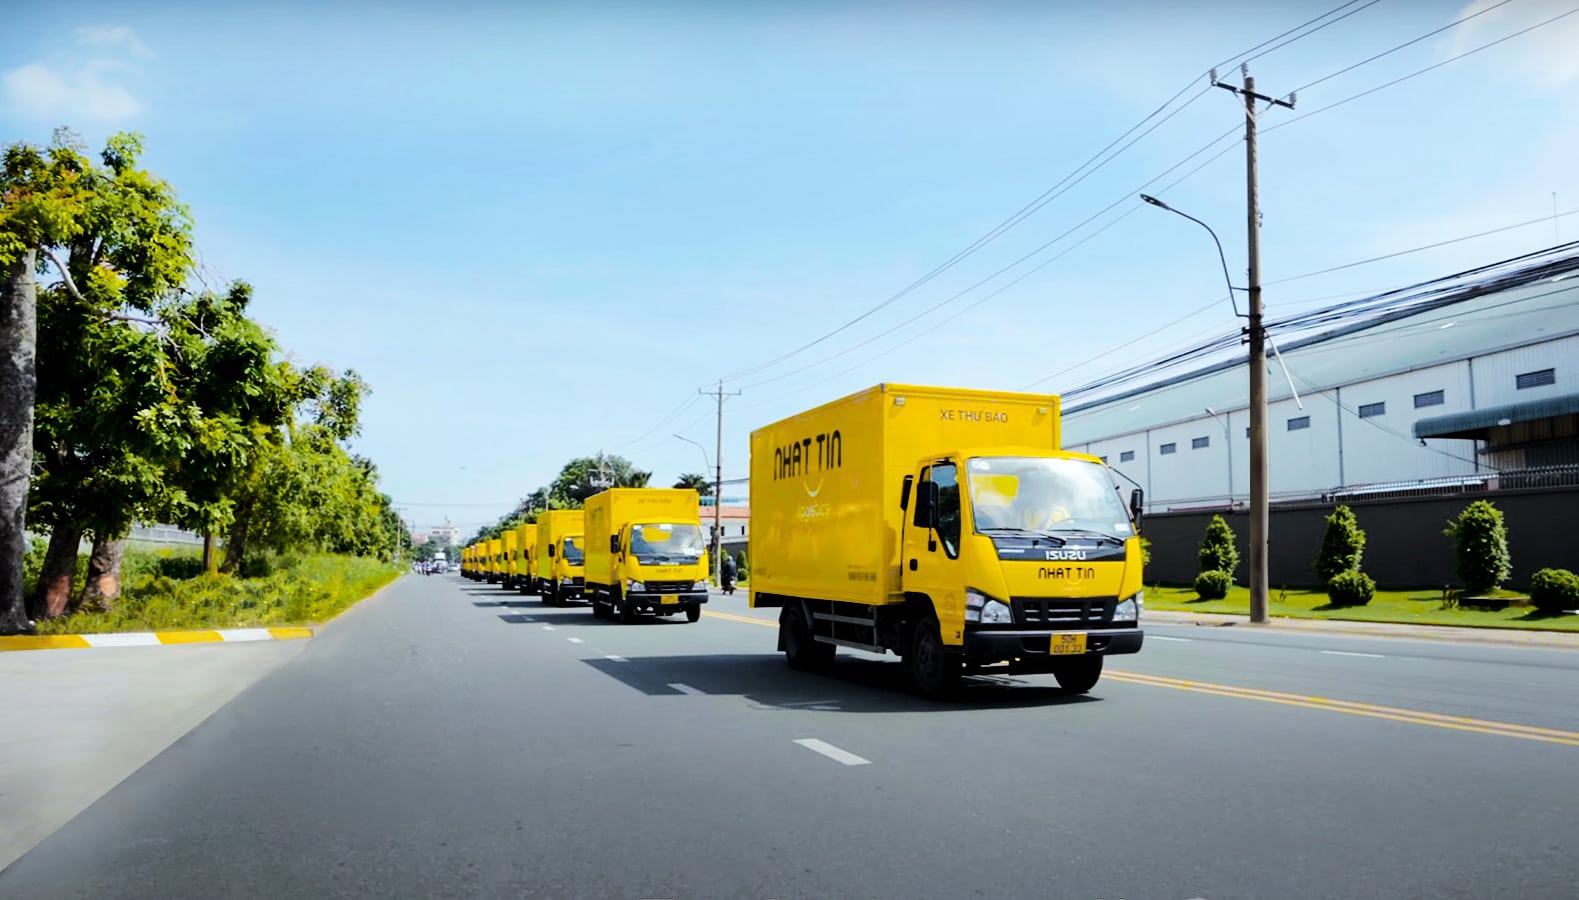 Chuyển phát nhanh Nhất Tín Logistics là một trong những công ty logistics lớn ở việt nam